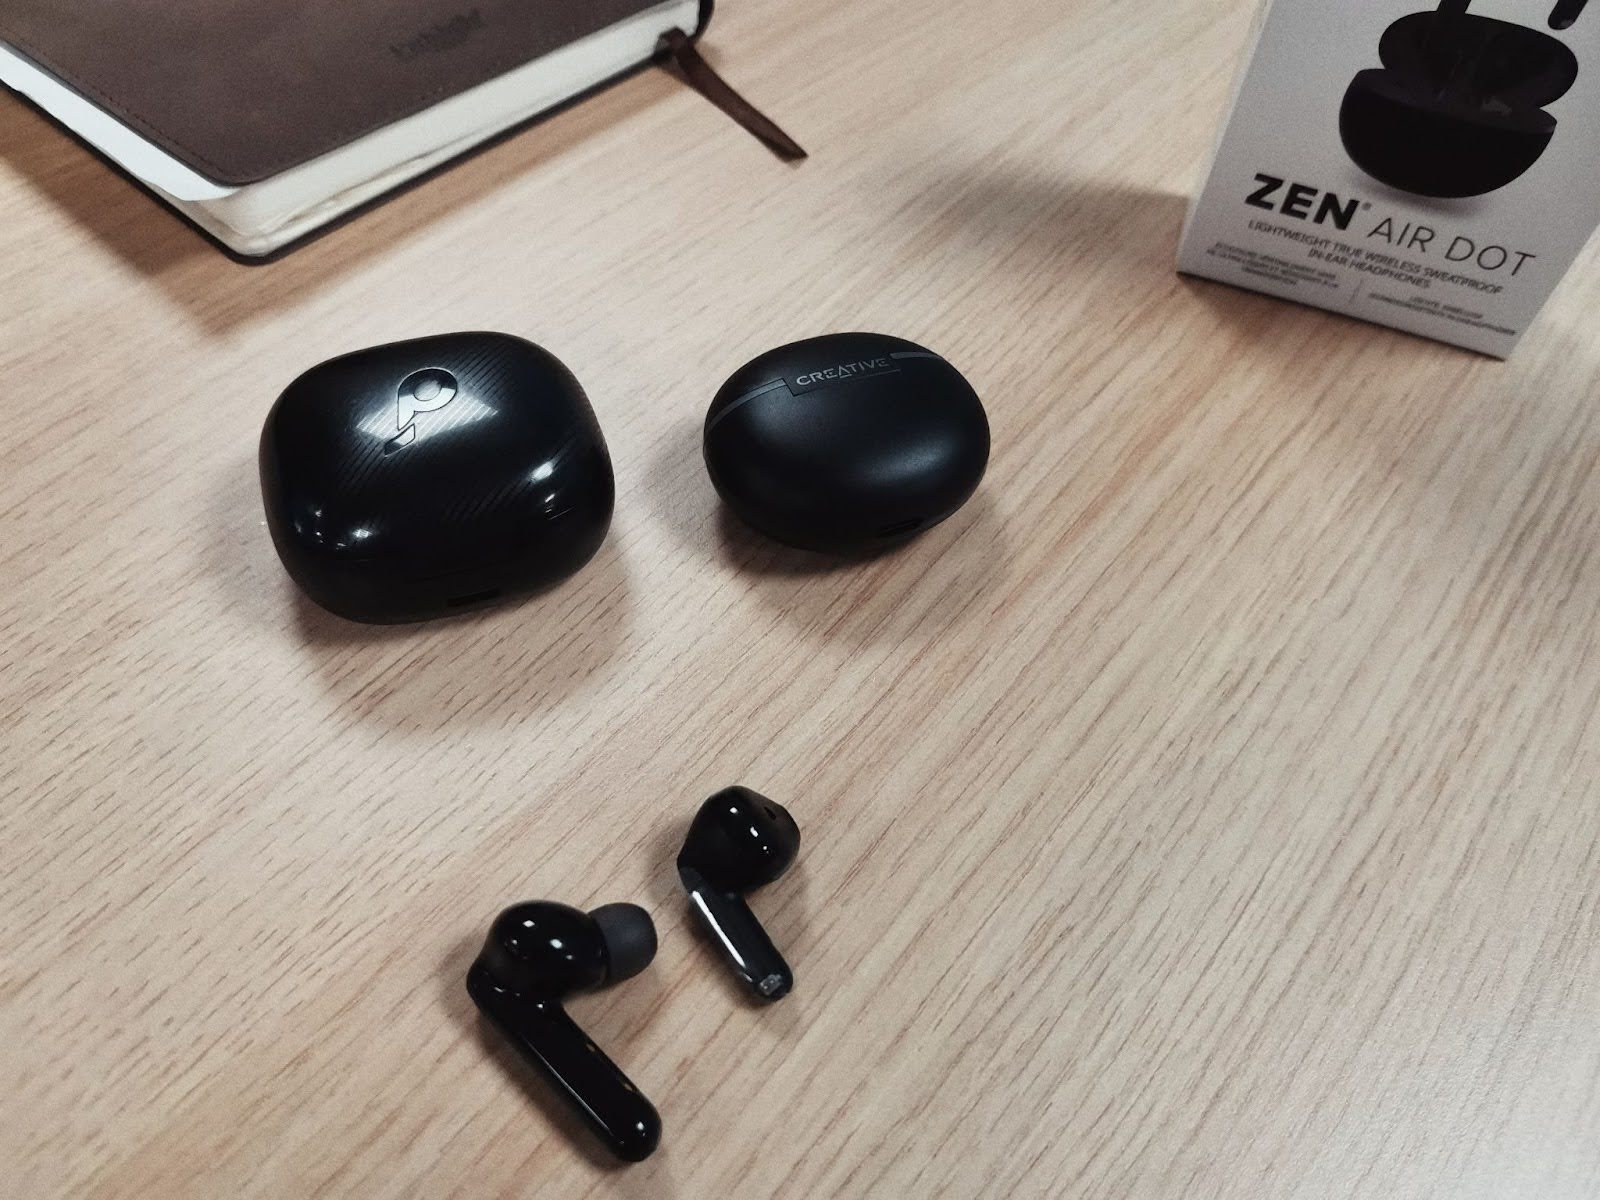 Сравнение двух разных моделей. Справа – Zen Air Dot